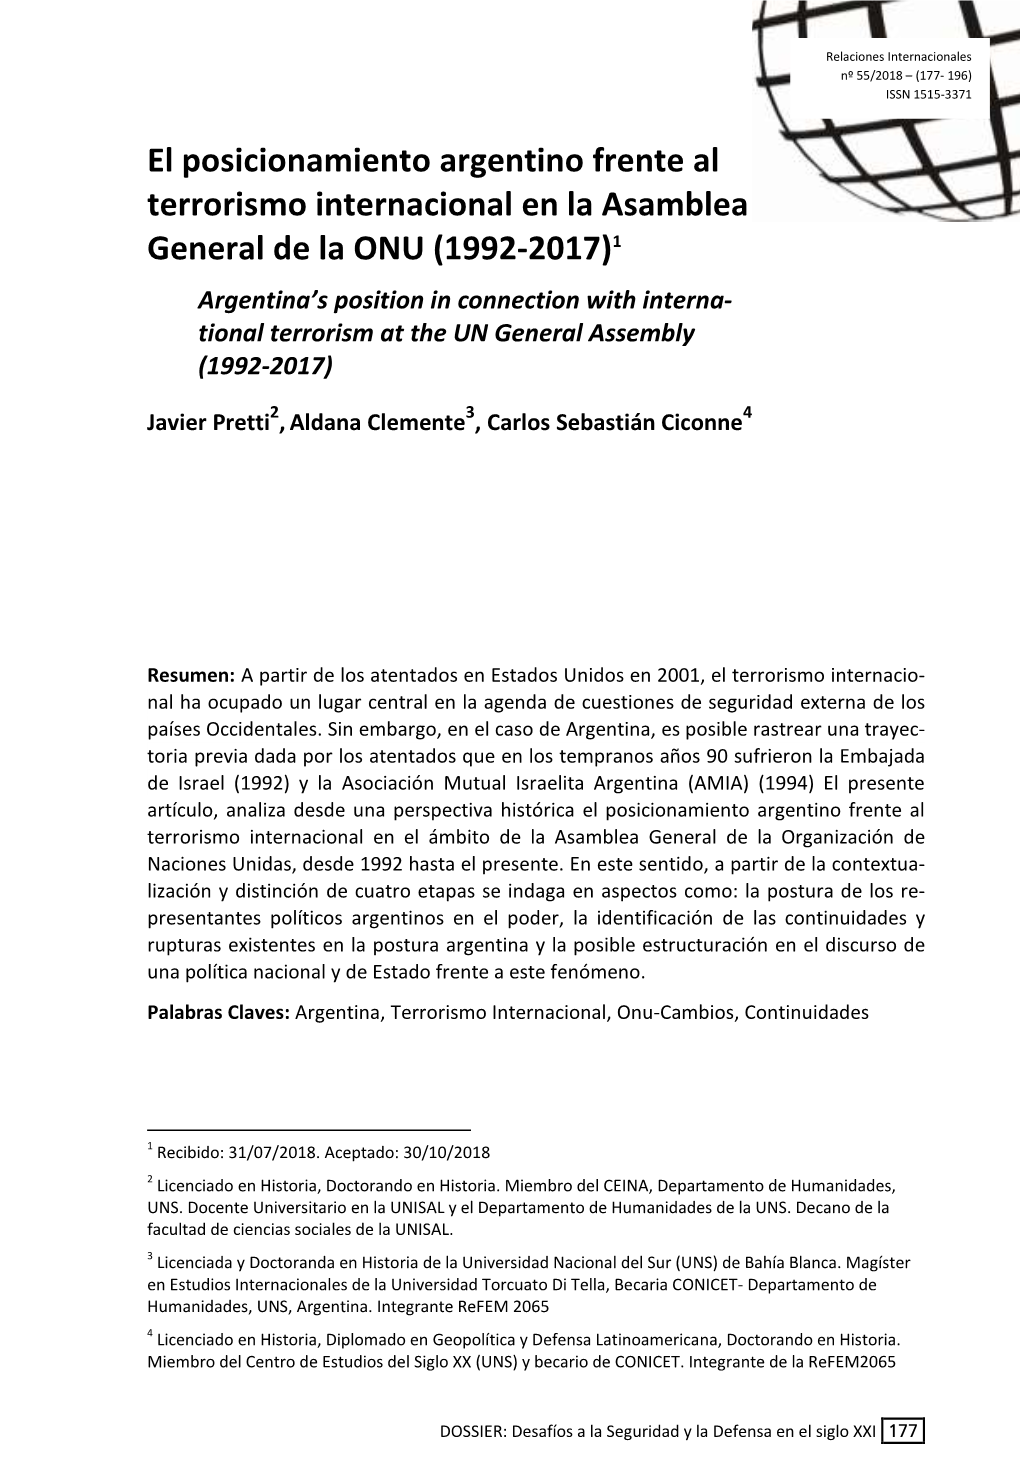 El Posicionamiento Argentino Frente Al Terrorismo Internacional En La Asamblea General De La ONU (1992-2017)1